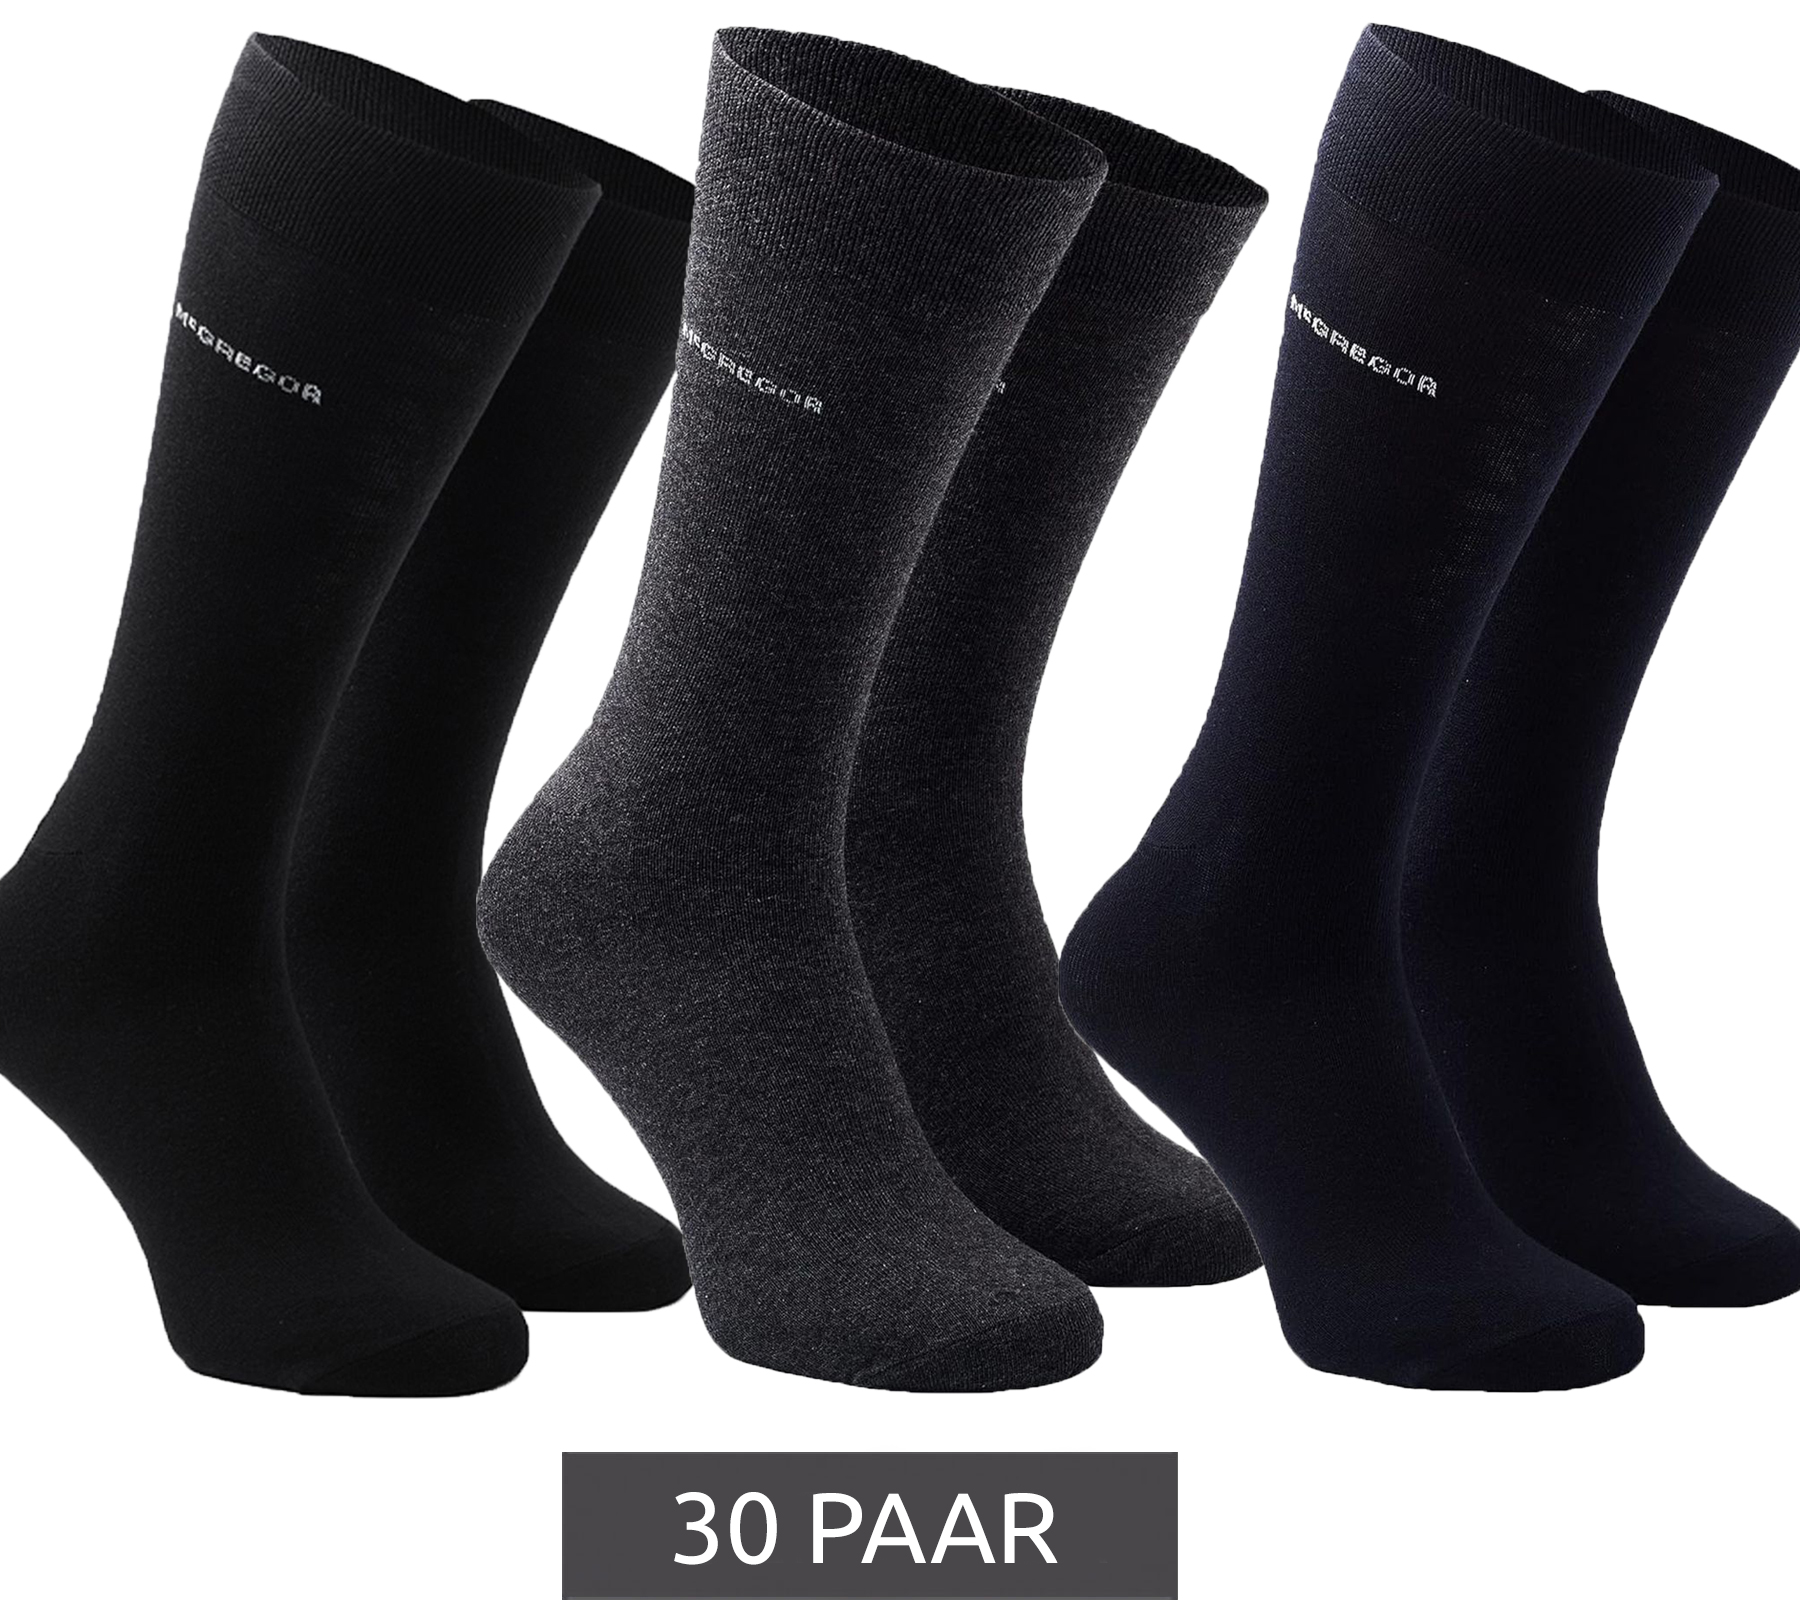 30 Paar McGREGOR Strümpfe Freizeit-Socken Oeko-Tex zertifiziert Business-Socken im Vorteilspack Schwarz Dunkelblau oder Grau